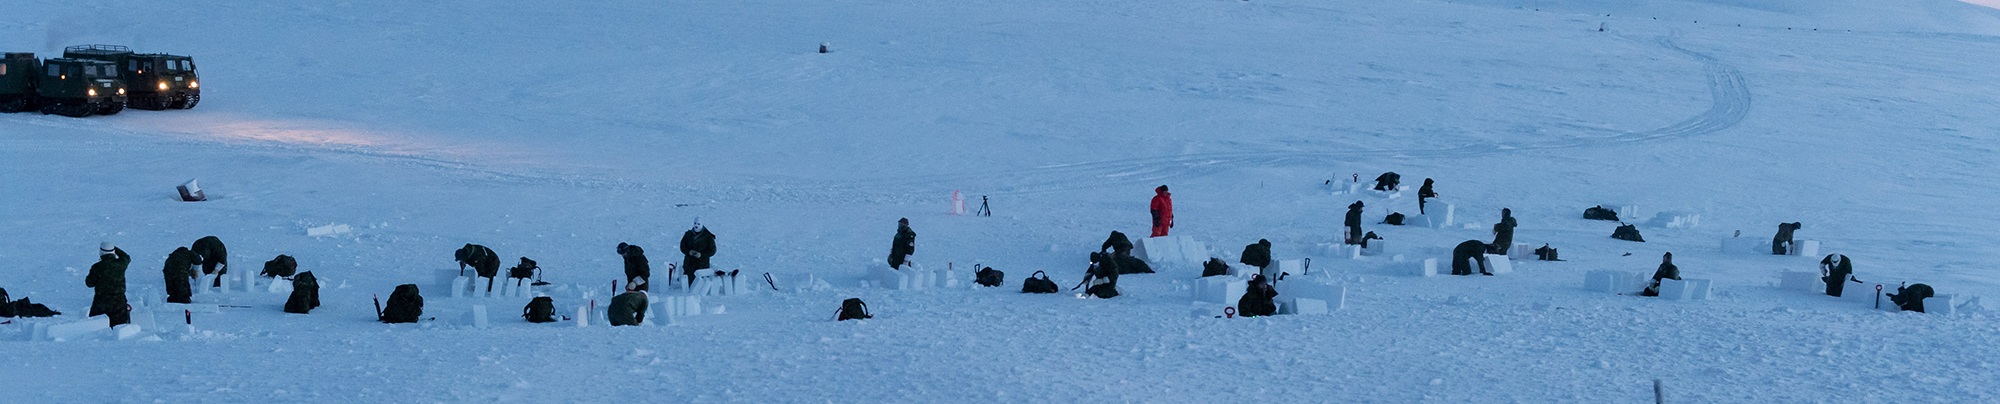 Les stagiaires qui participent au cours Opérations aériennes – Survie dans l’Arctique qui s’est tenu à Resolute Bay, au Nunavut, du 21 janvier au 1er février 2020, construisent des tranchées-abris de survie. PHOTO : Caporal Brian Lindgren